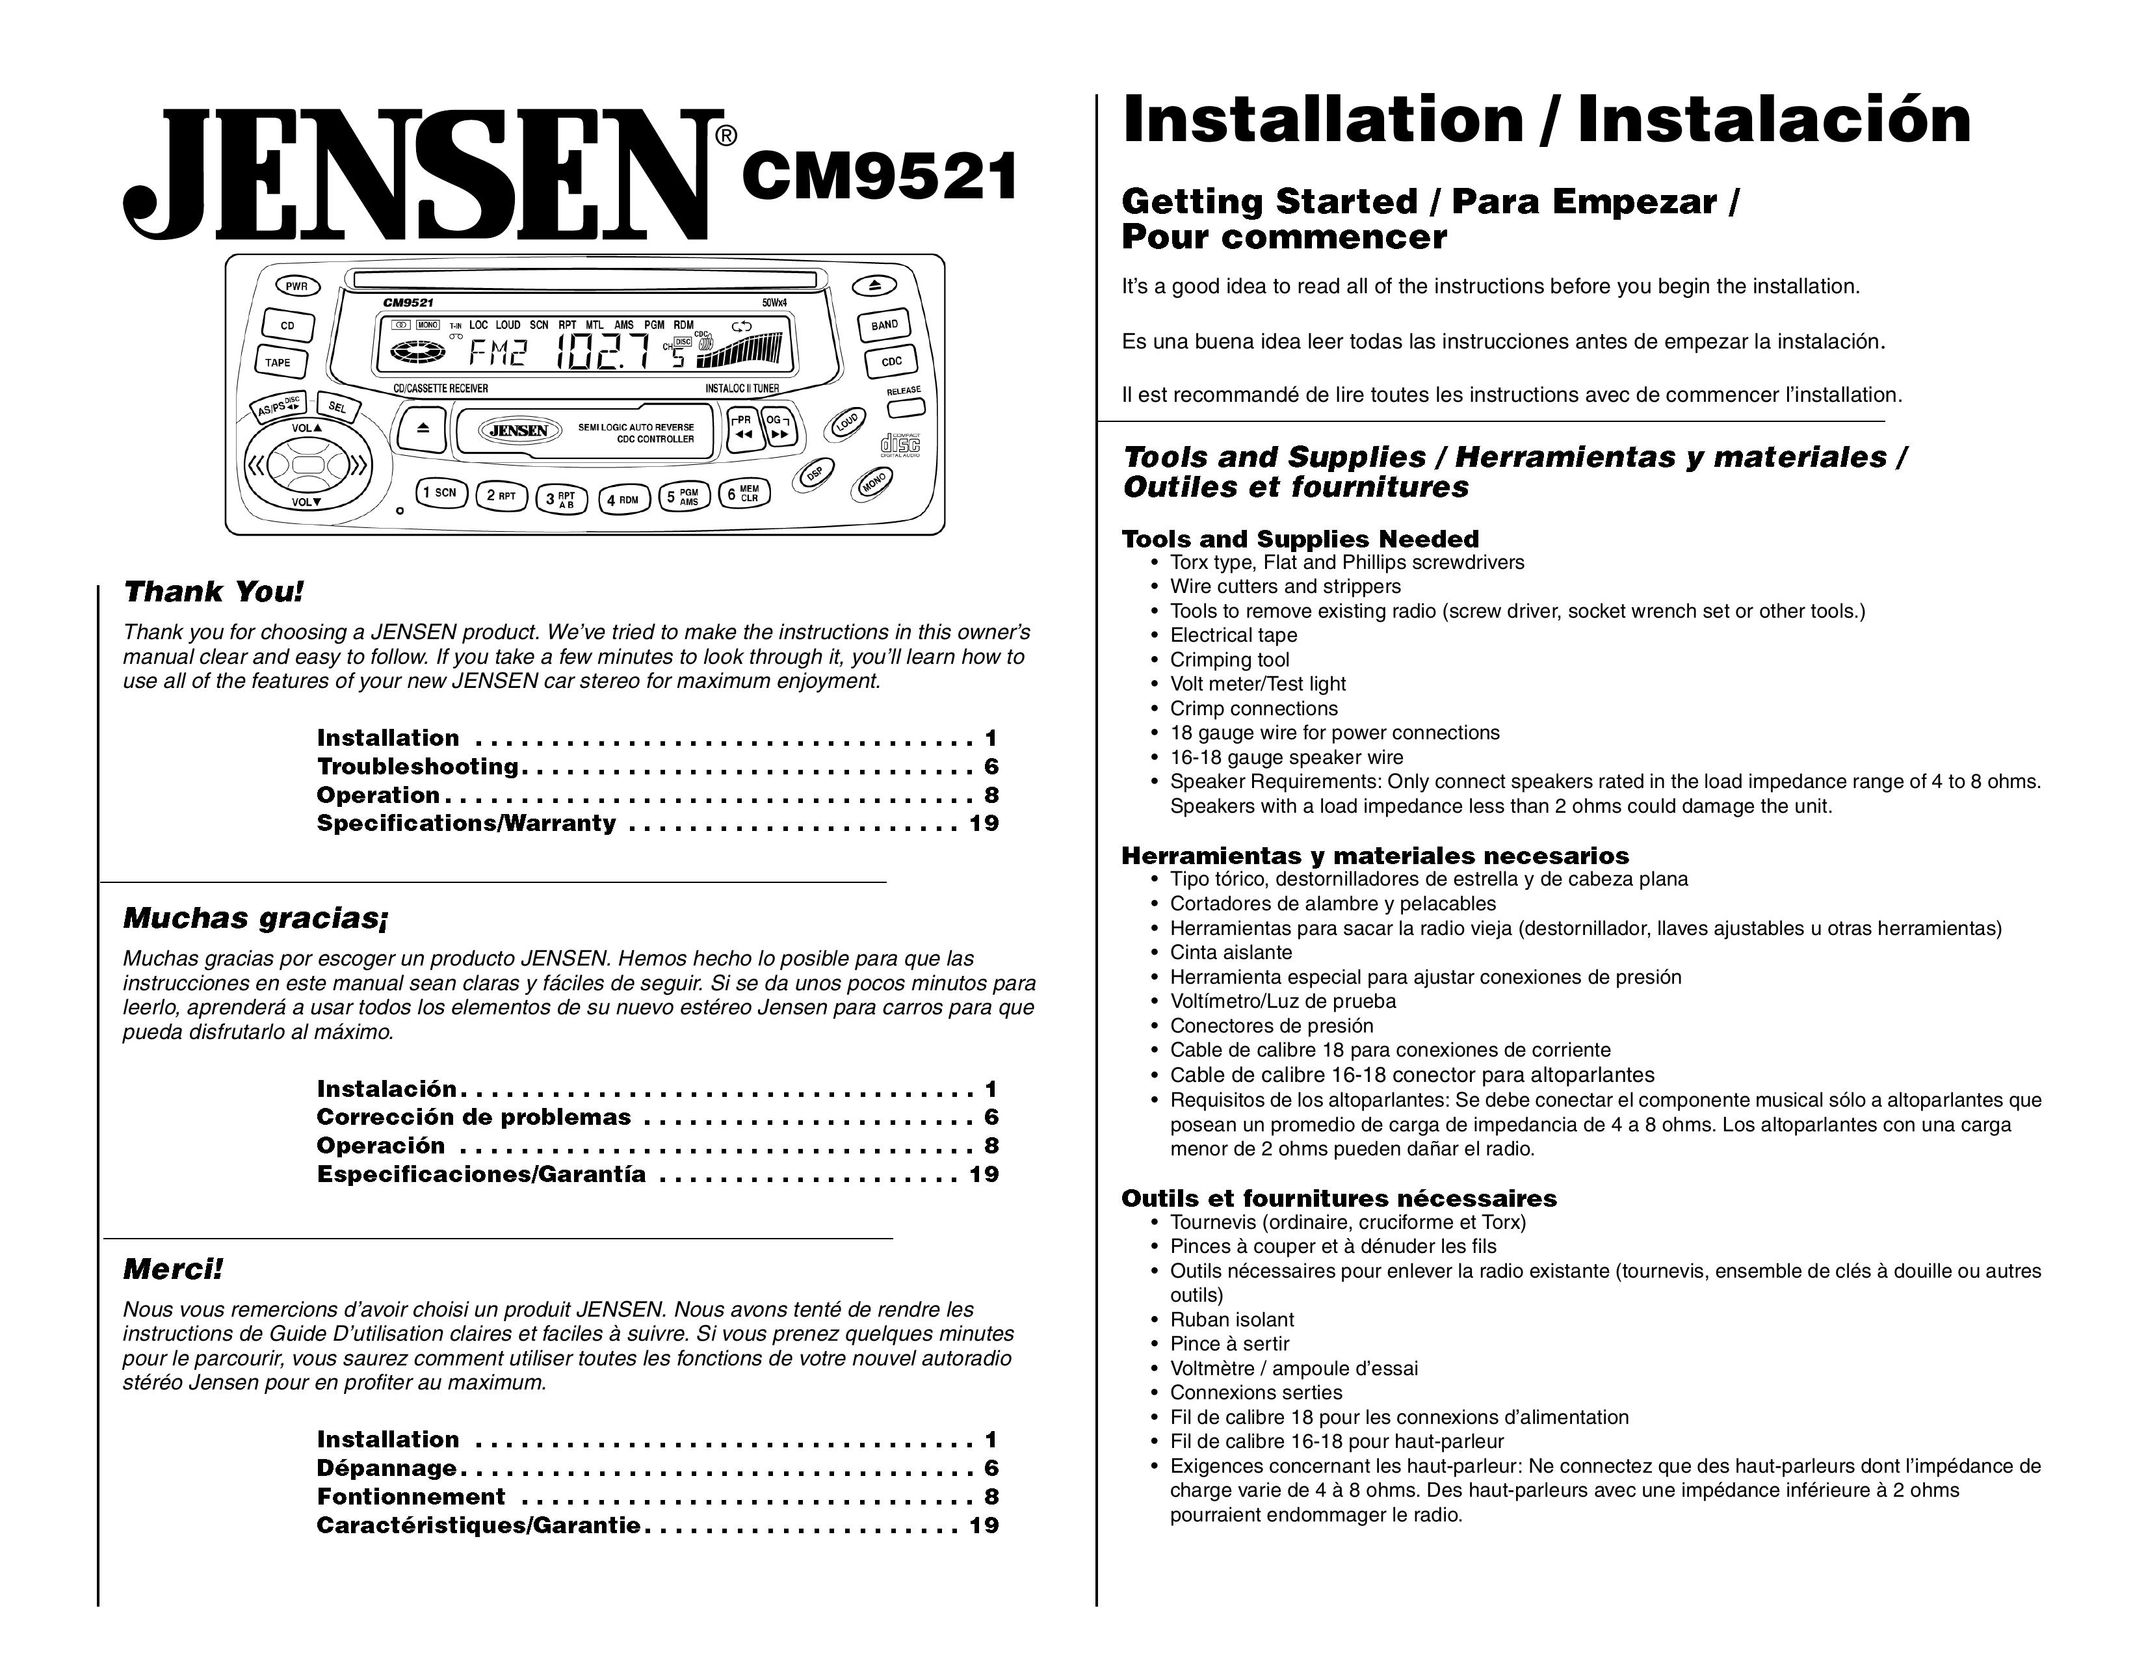 Jensen CM9521 Car Stereo System User Manual